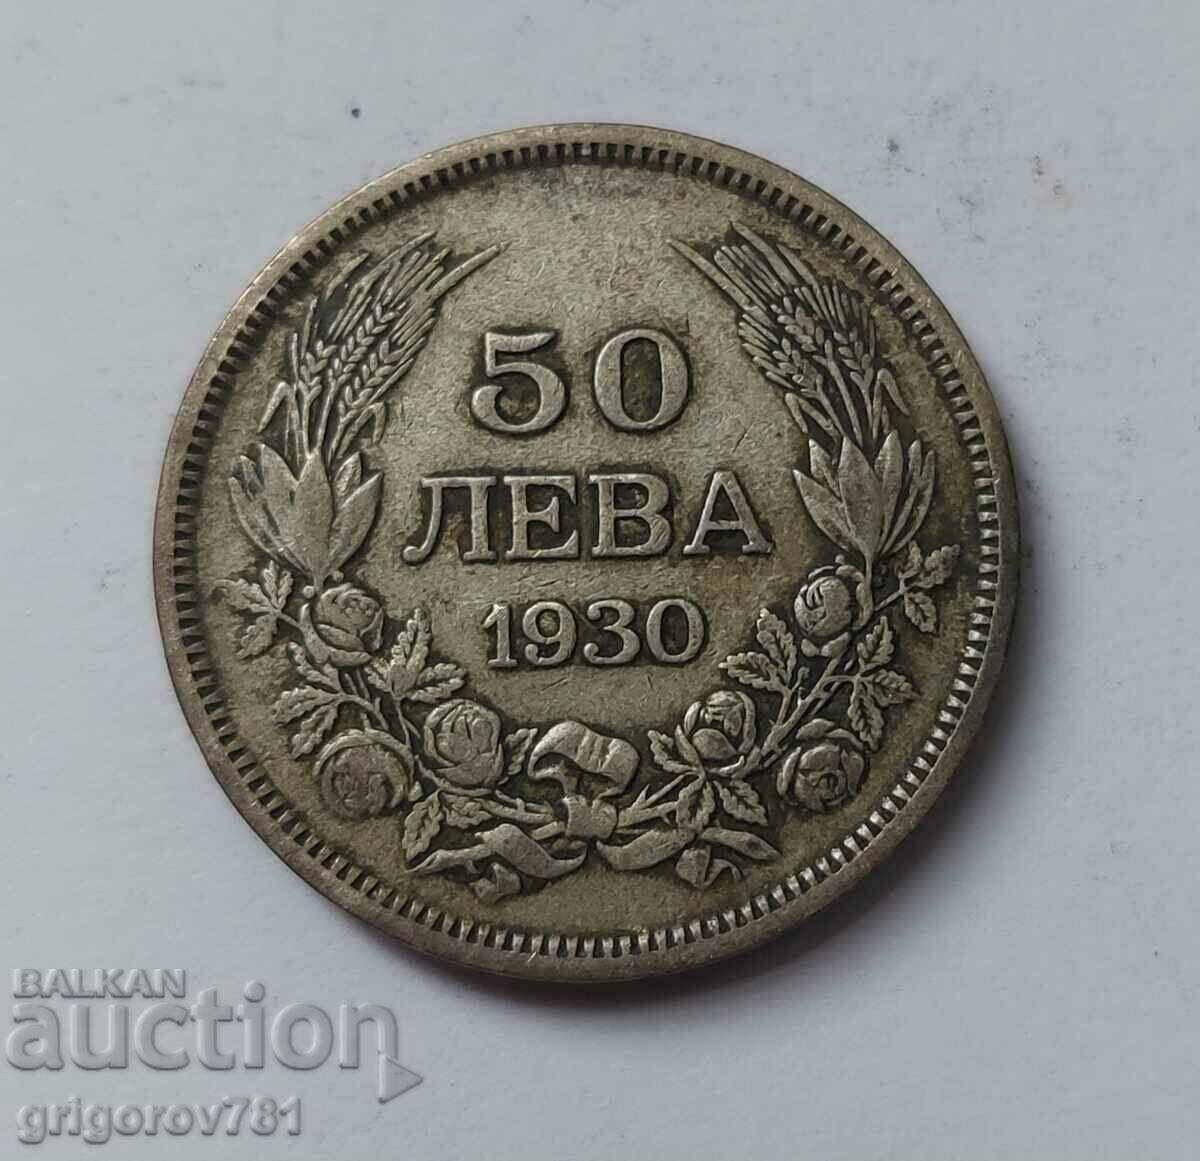 50 leva silver Bulgaria 1930 - silver coin #50